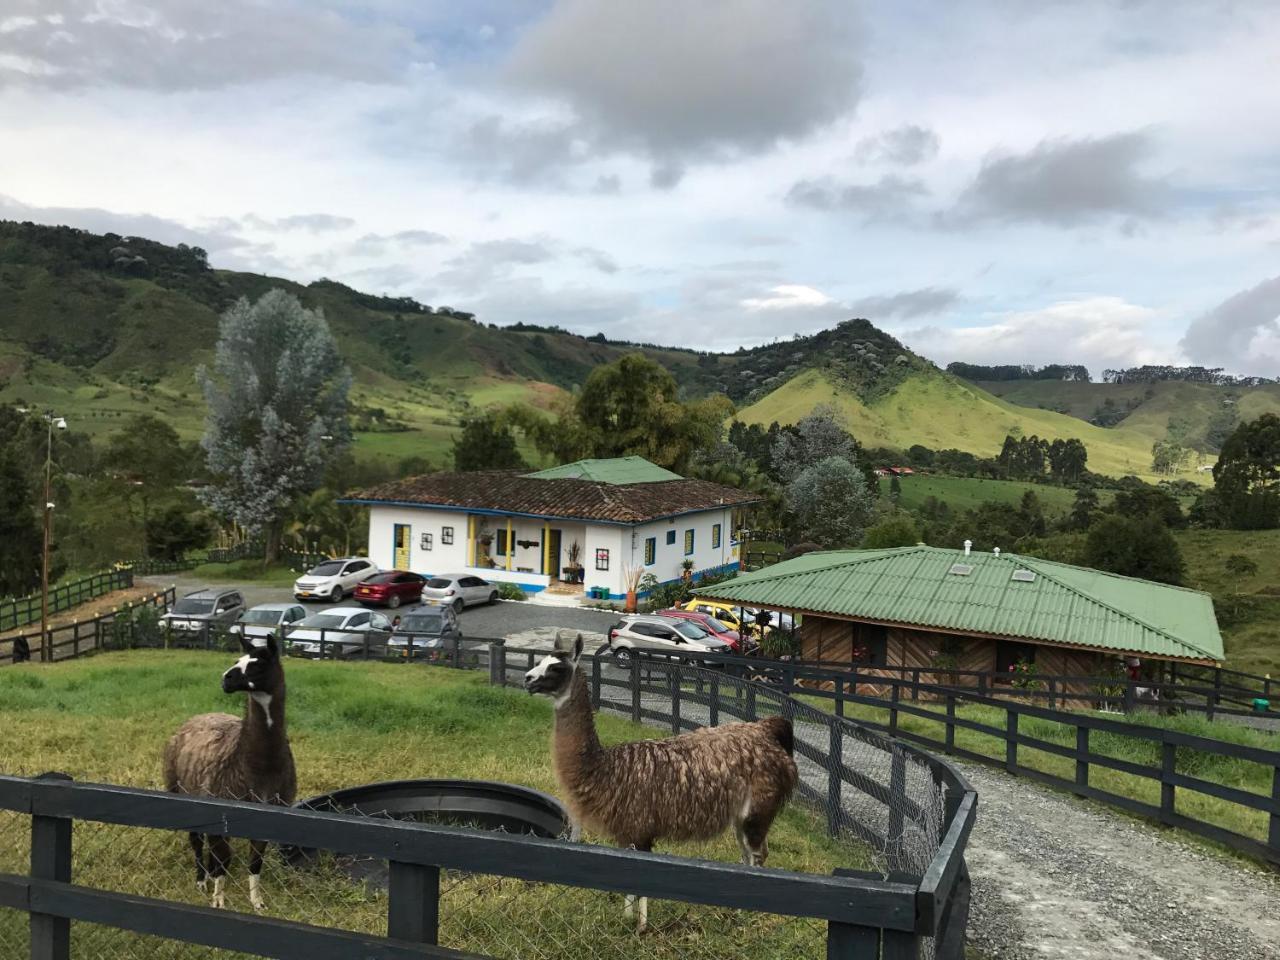 Hotel Bariloche 圣罗莎德卡瓦尔 外观 照片